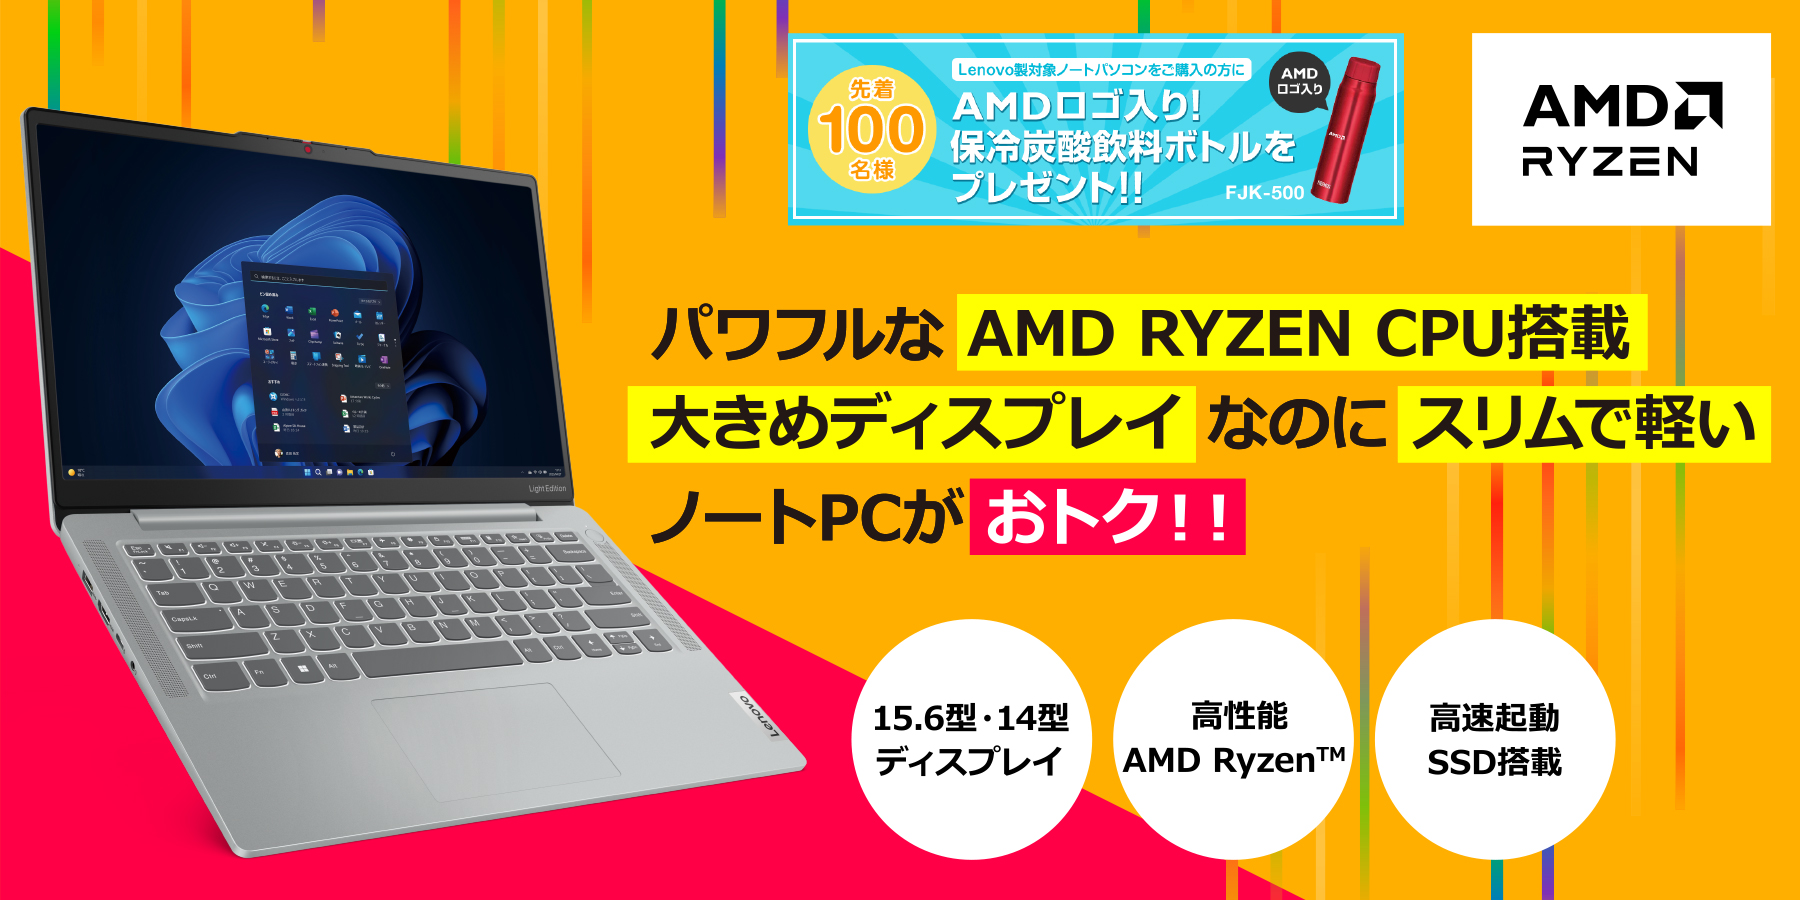 パワフルな AMD RYZEN CPU搭載大きめディスプレイなのにスリムで軽い ...